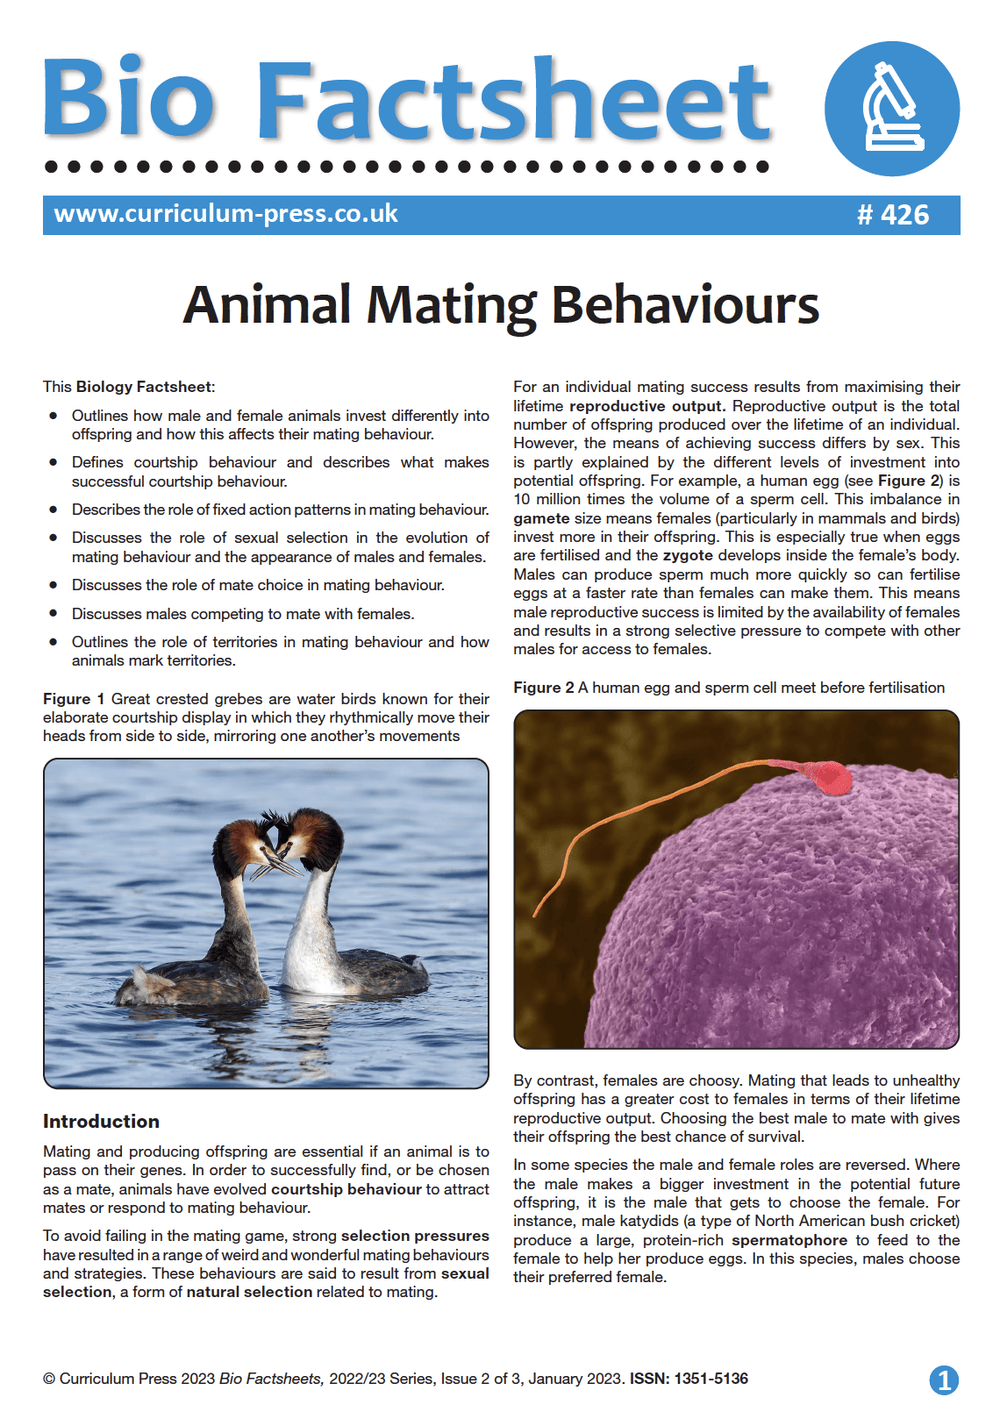 Animal Mating Behaviours - Curriculum Press